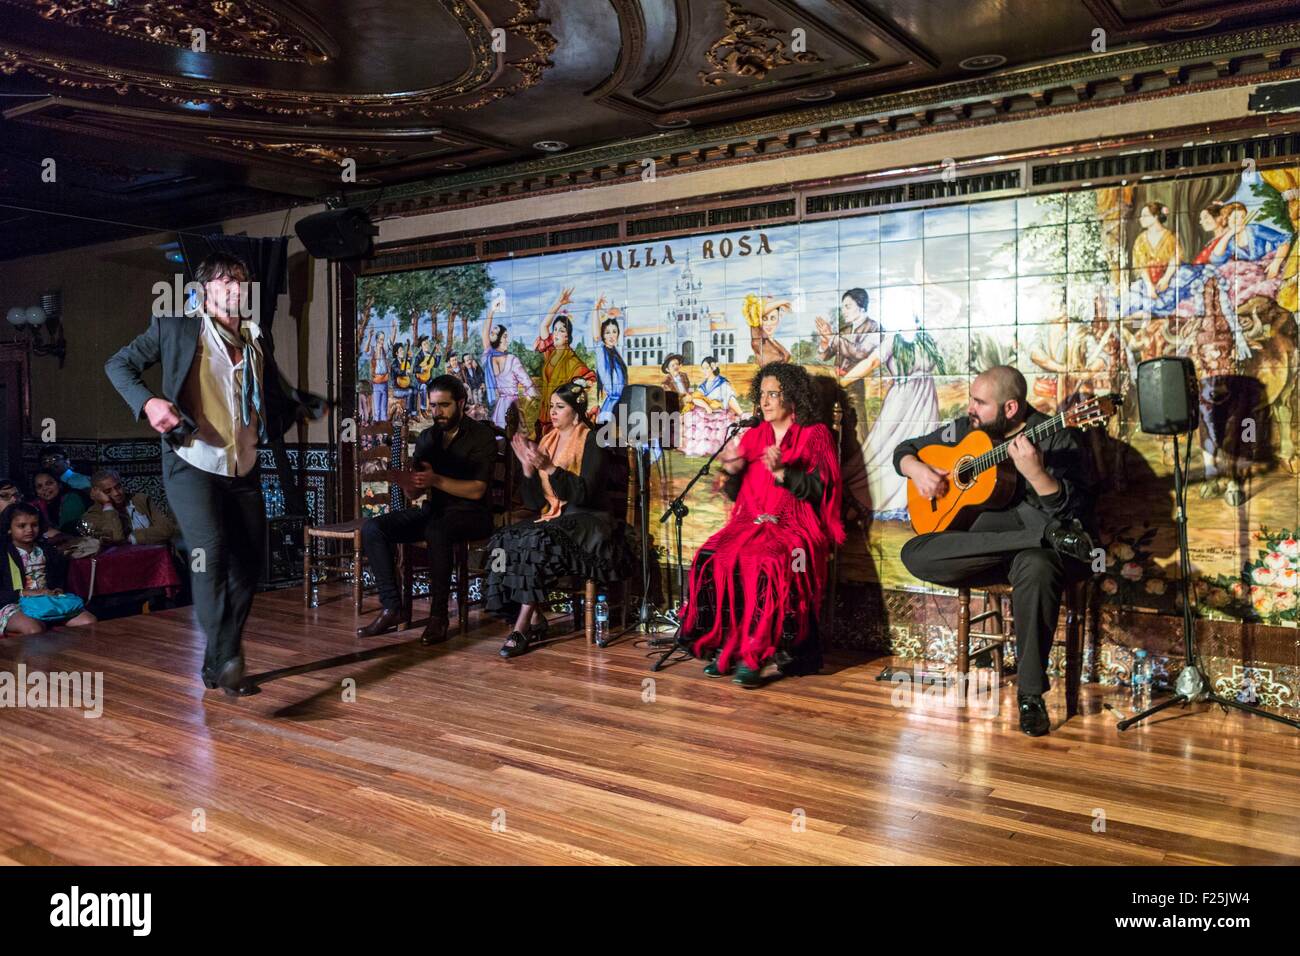 Spagna, Madrid, nel quartiere di las Huertas, spettacolo di Flamenco a Villa Rosa Foto Stock